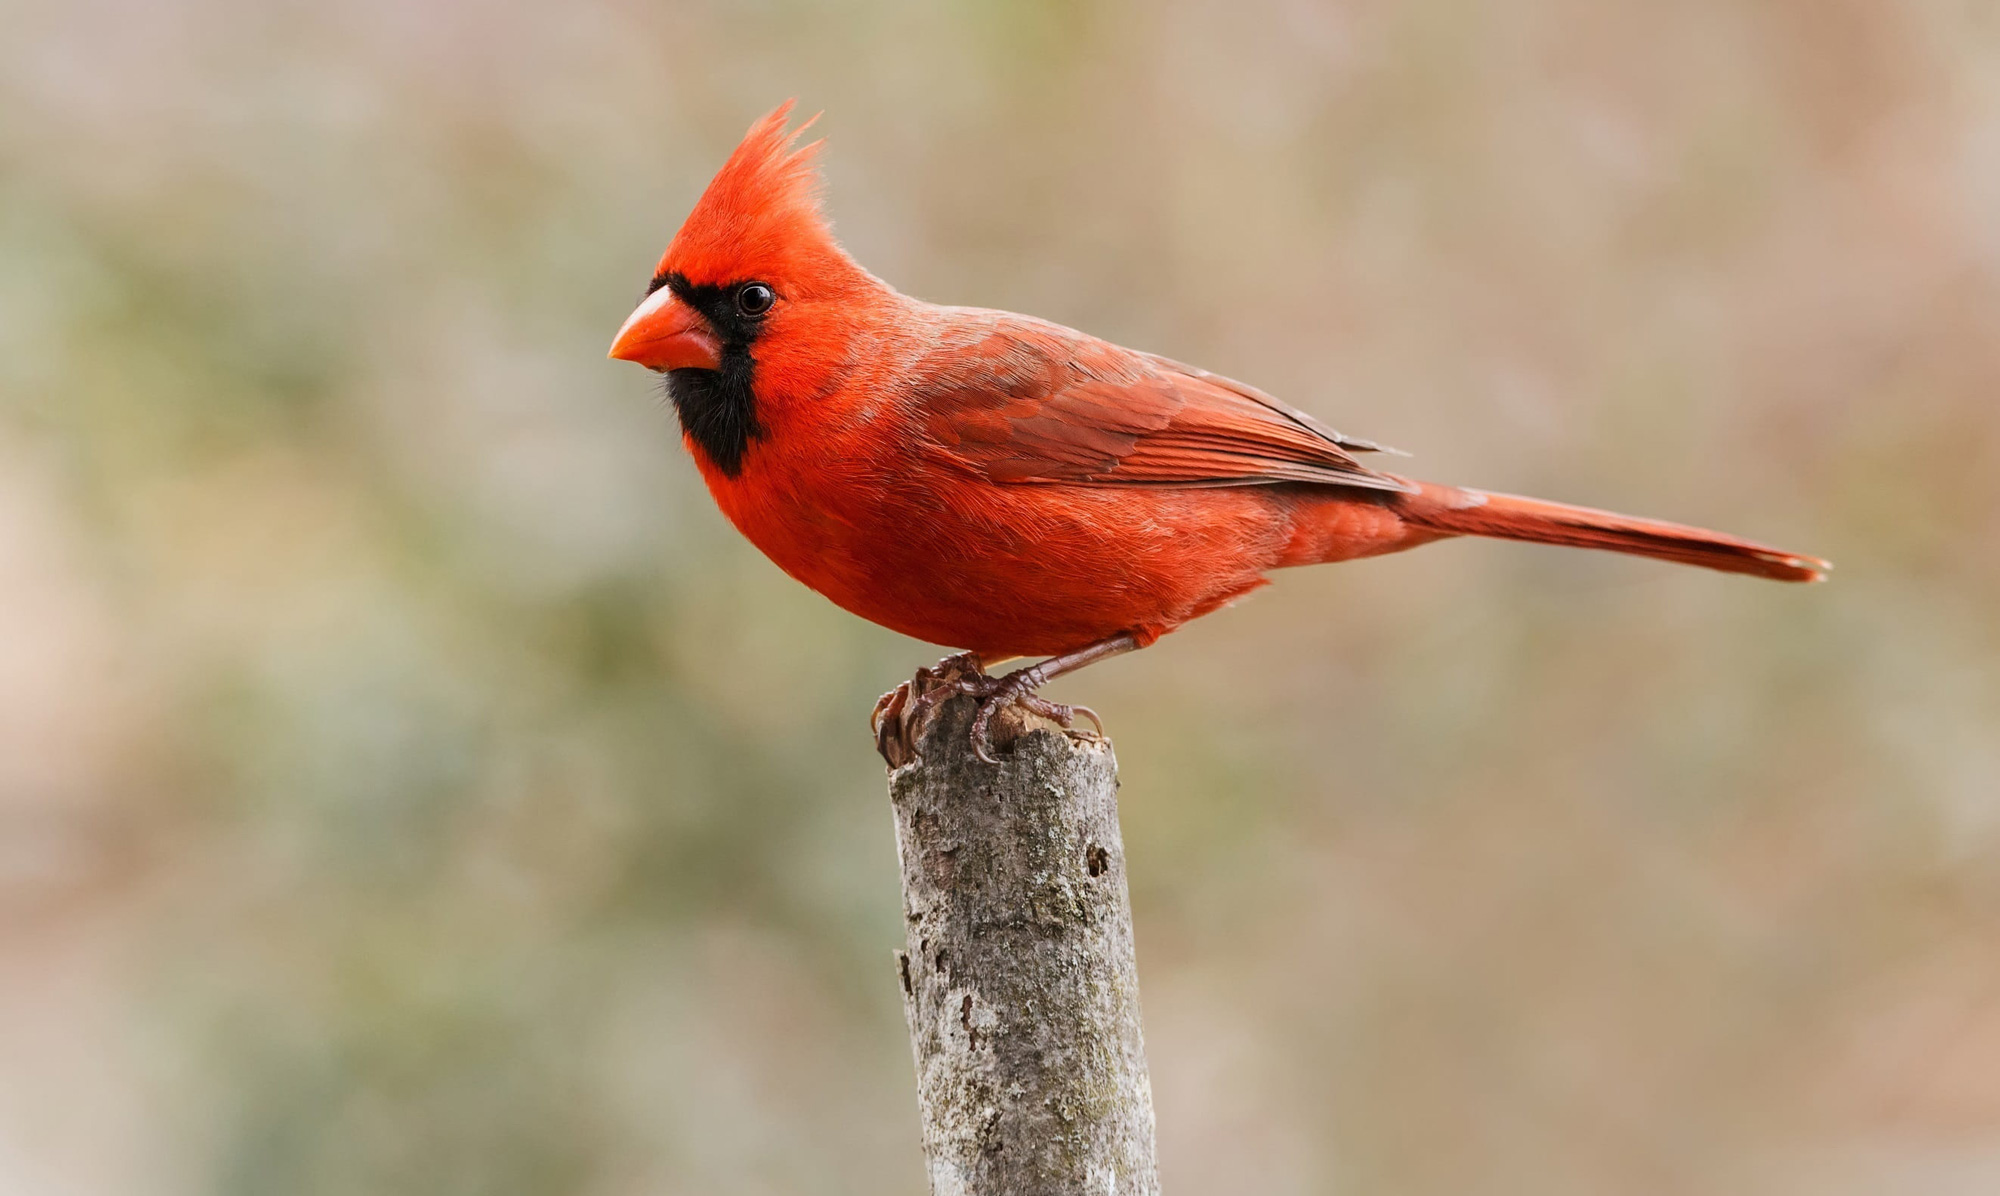 a red bird